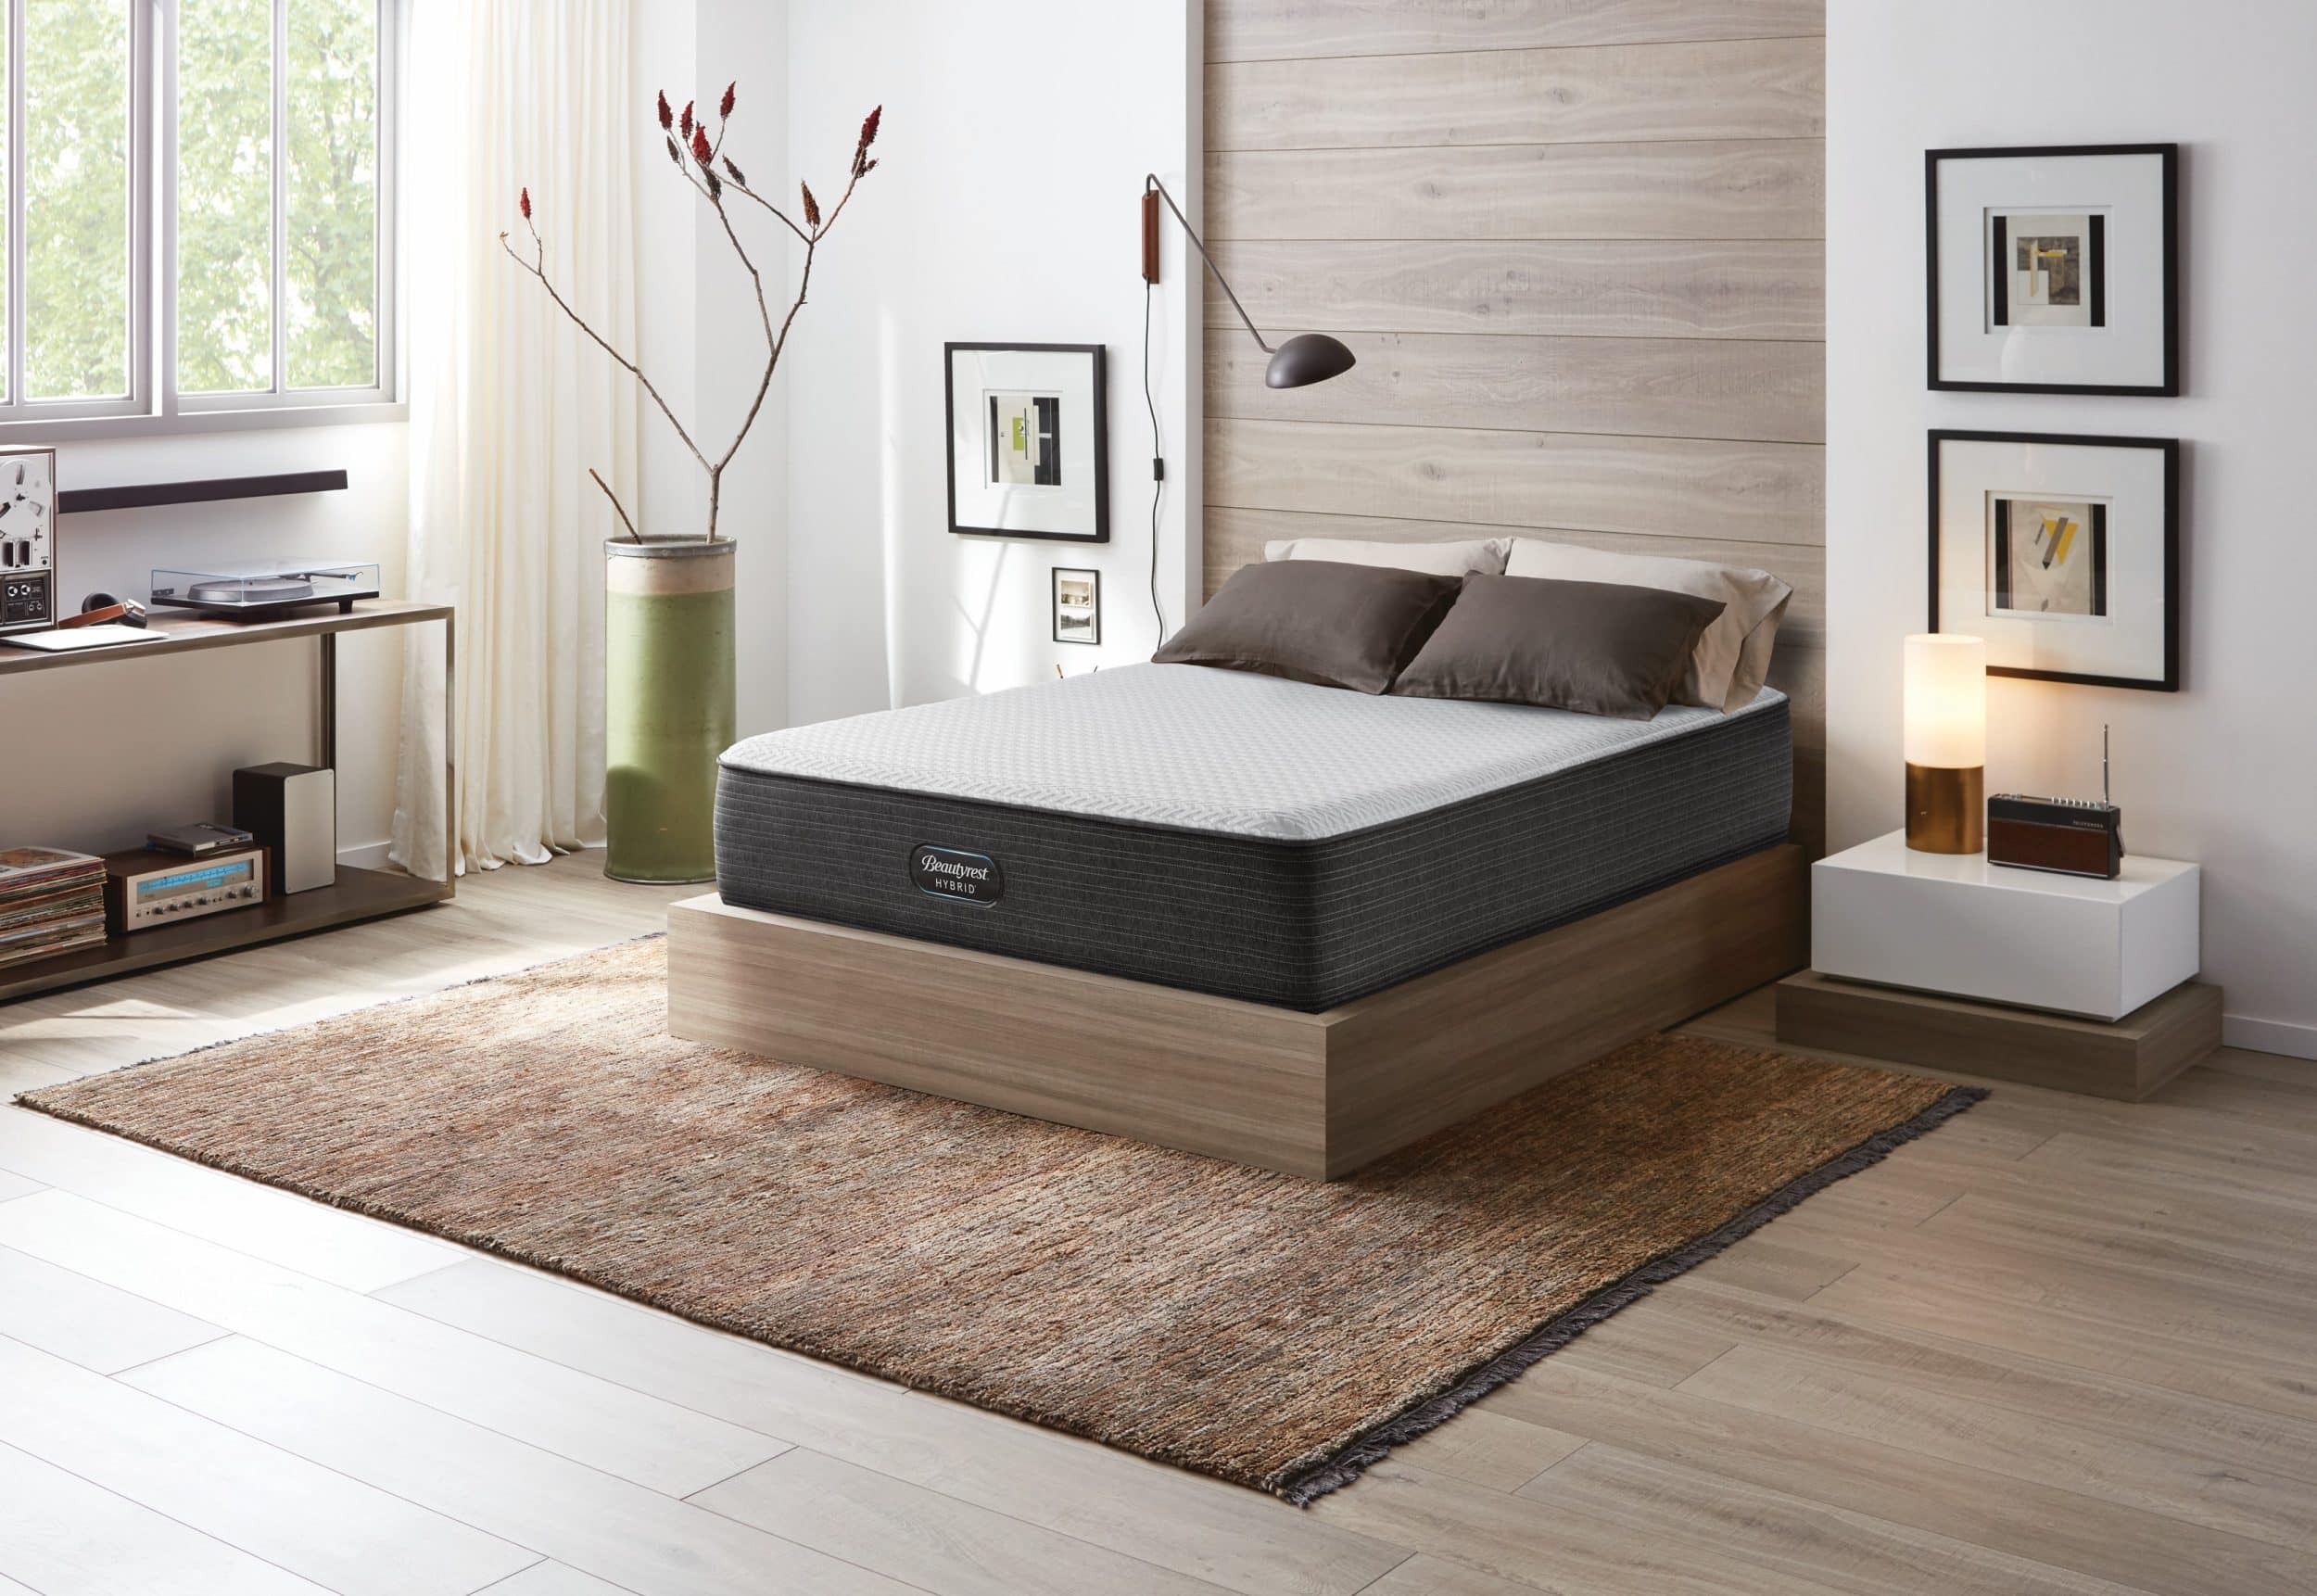 beautyrest mattress x10020541 stores